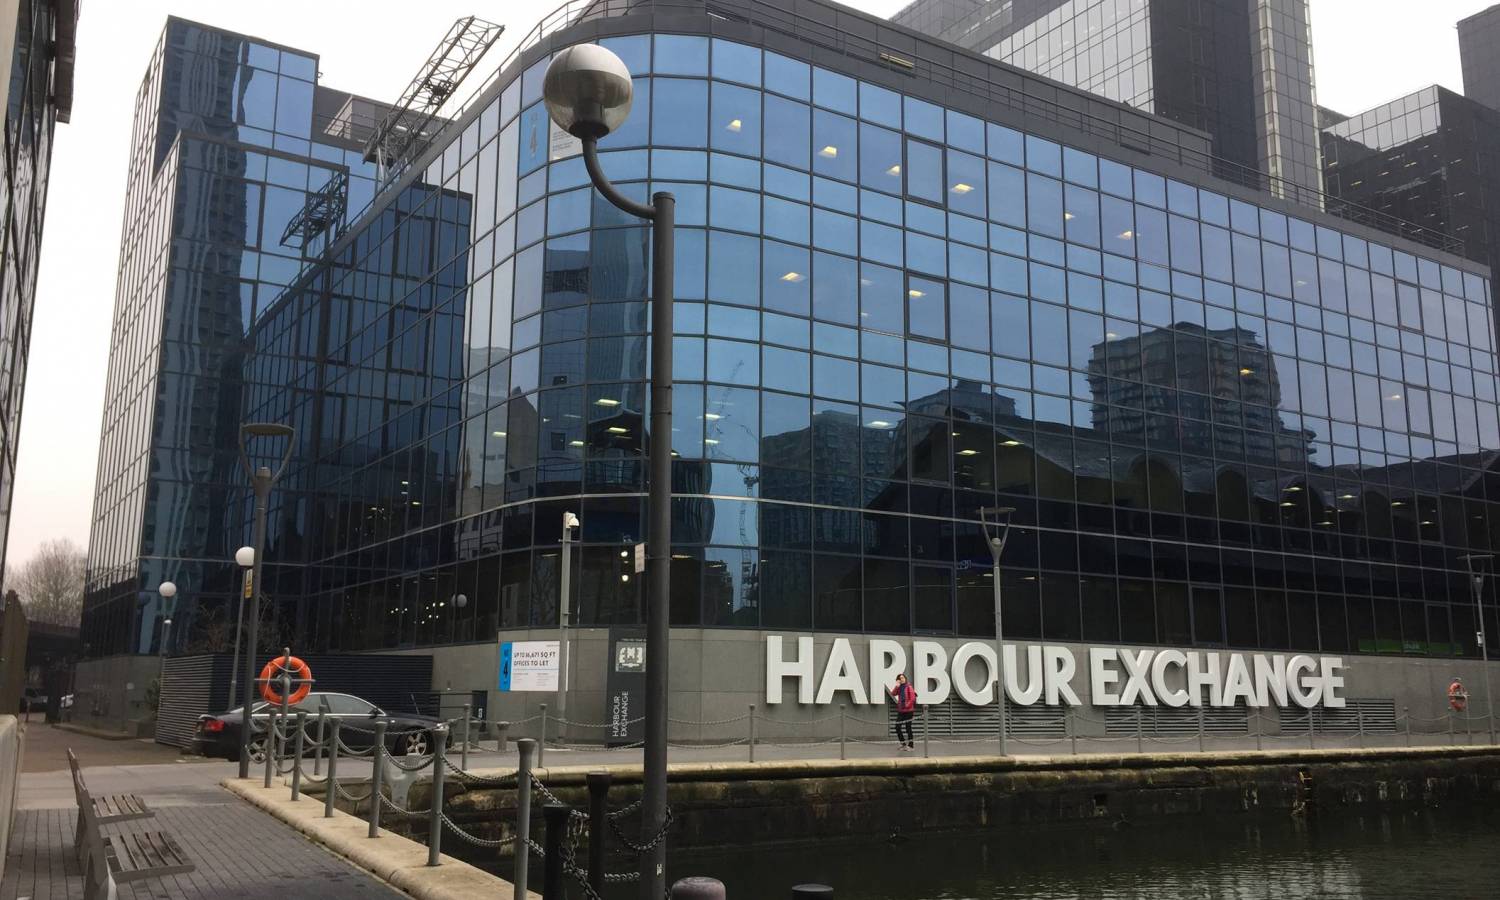 Developer Landsec sells Harbour Exchange in Docklands for £196.5m